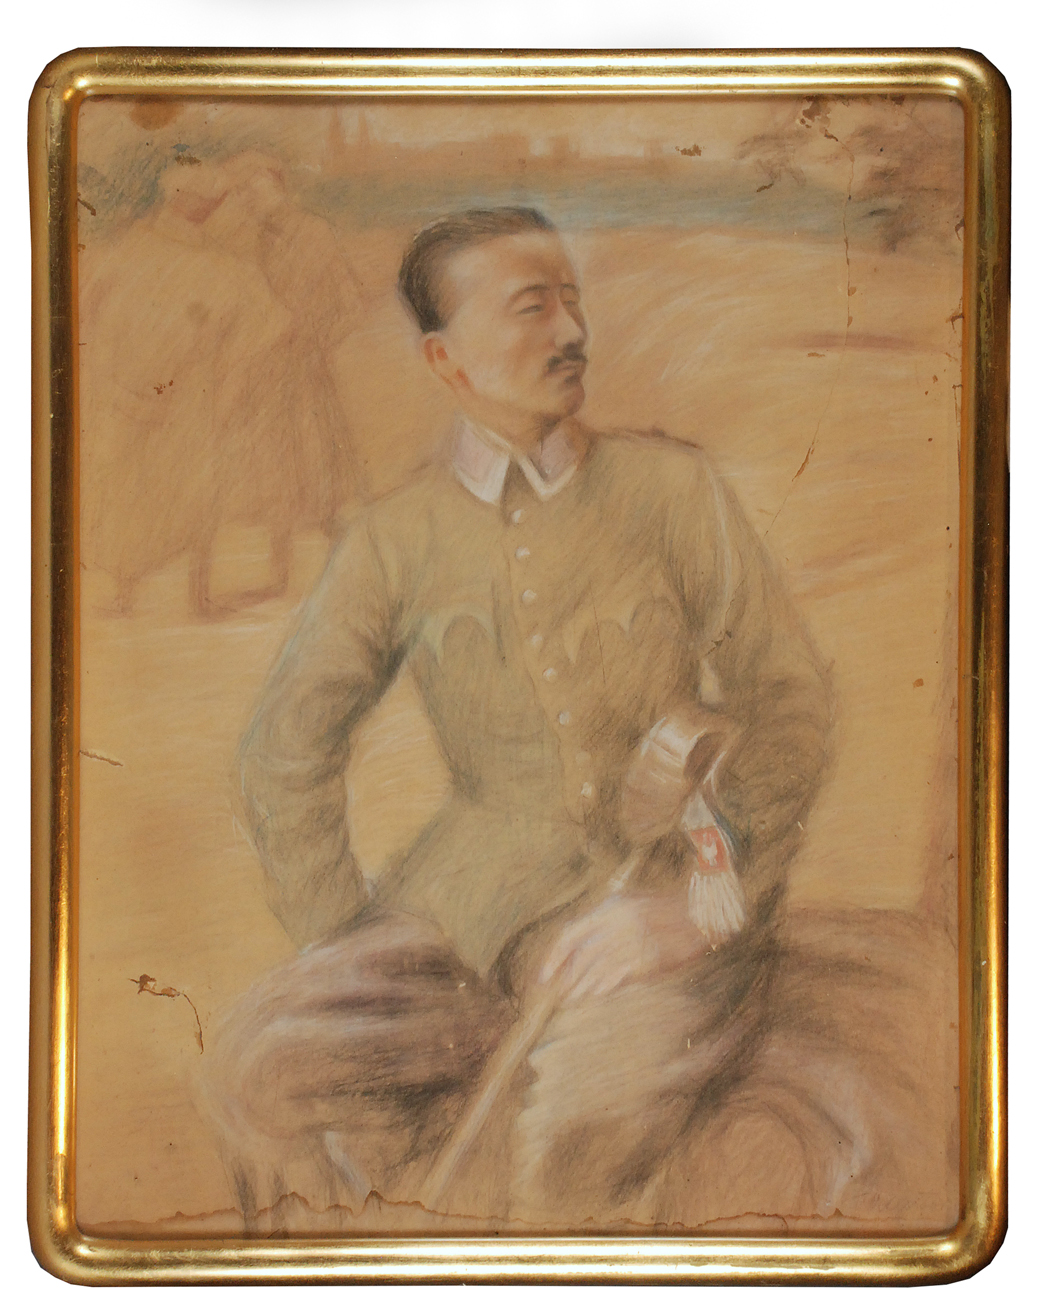 Portret legionisty - szkic, ok. 1915